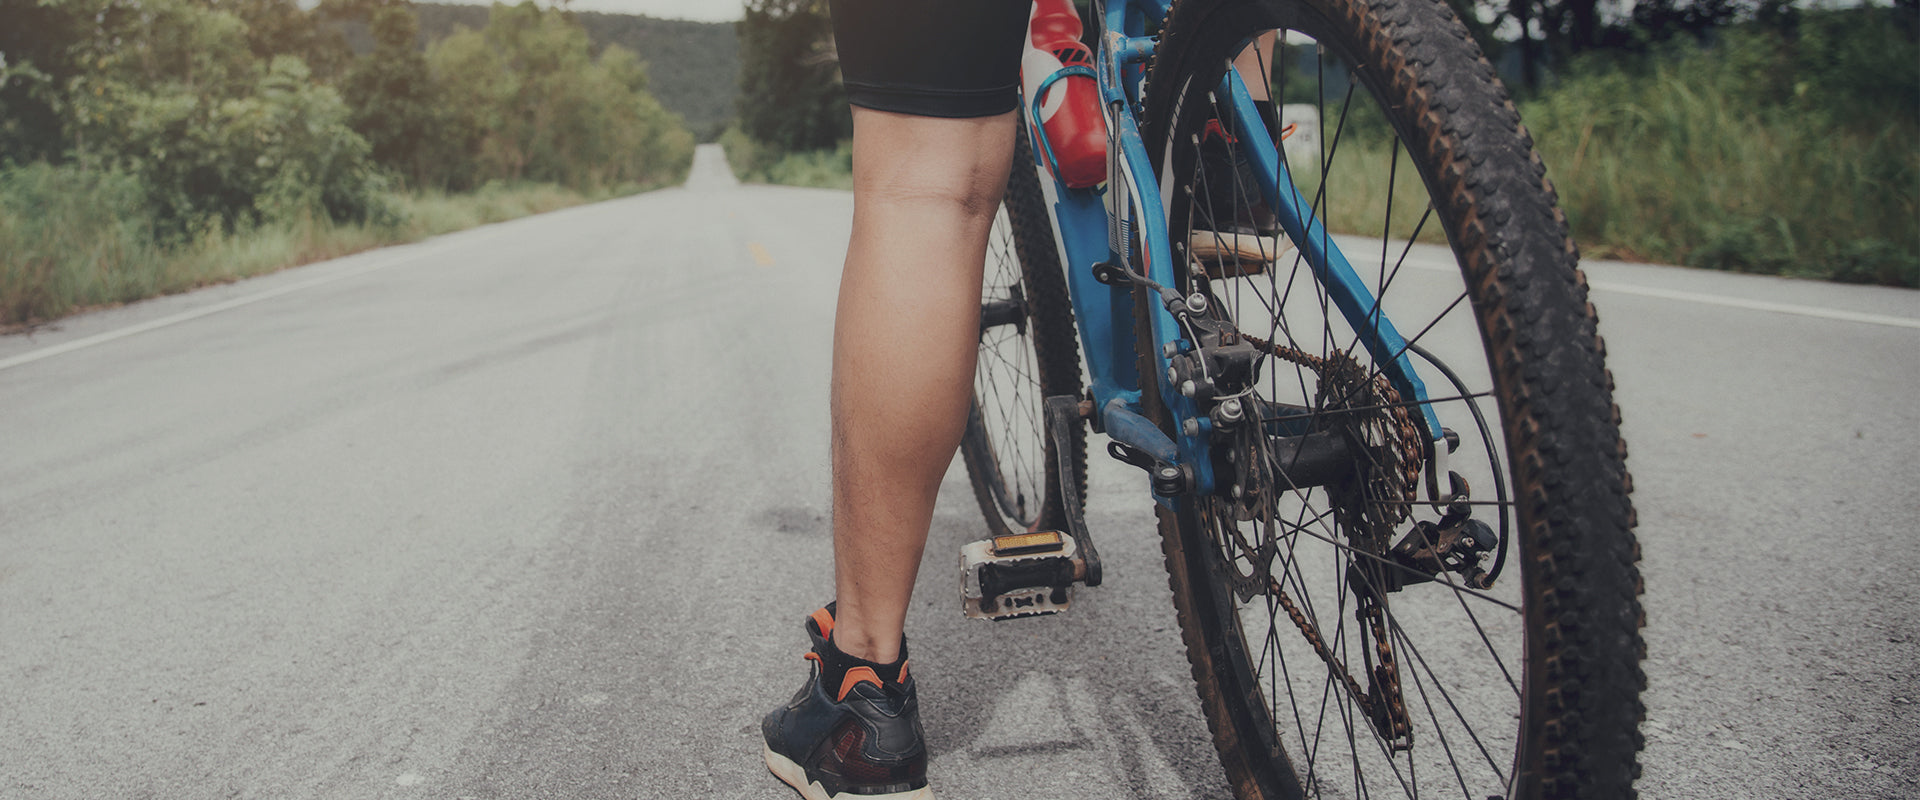 ¿Te gusta salir a entrenar en bicicleta bien sea de montaña (BTT) o carretera? Qué mejor manera de hacerlo que con esta equipación para ciclistas de todo tipo de nivel, ya sea amateur o profesional.